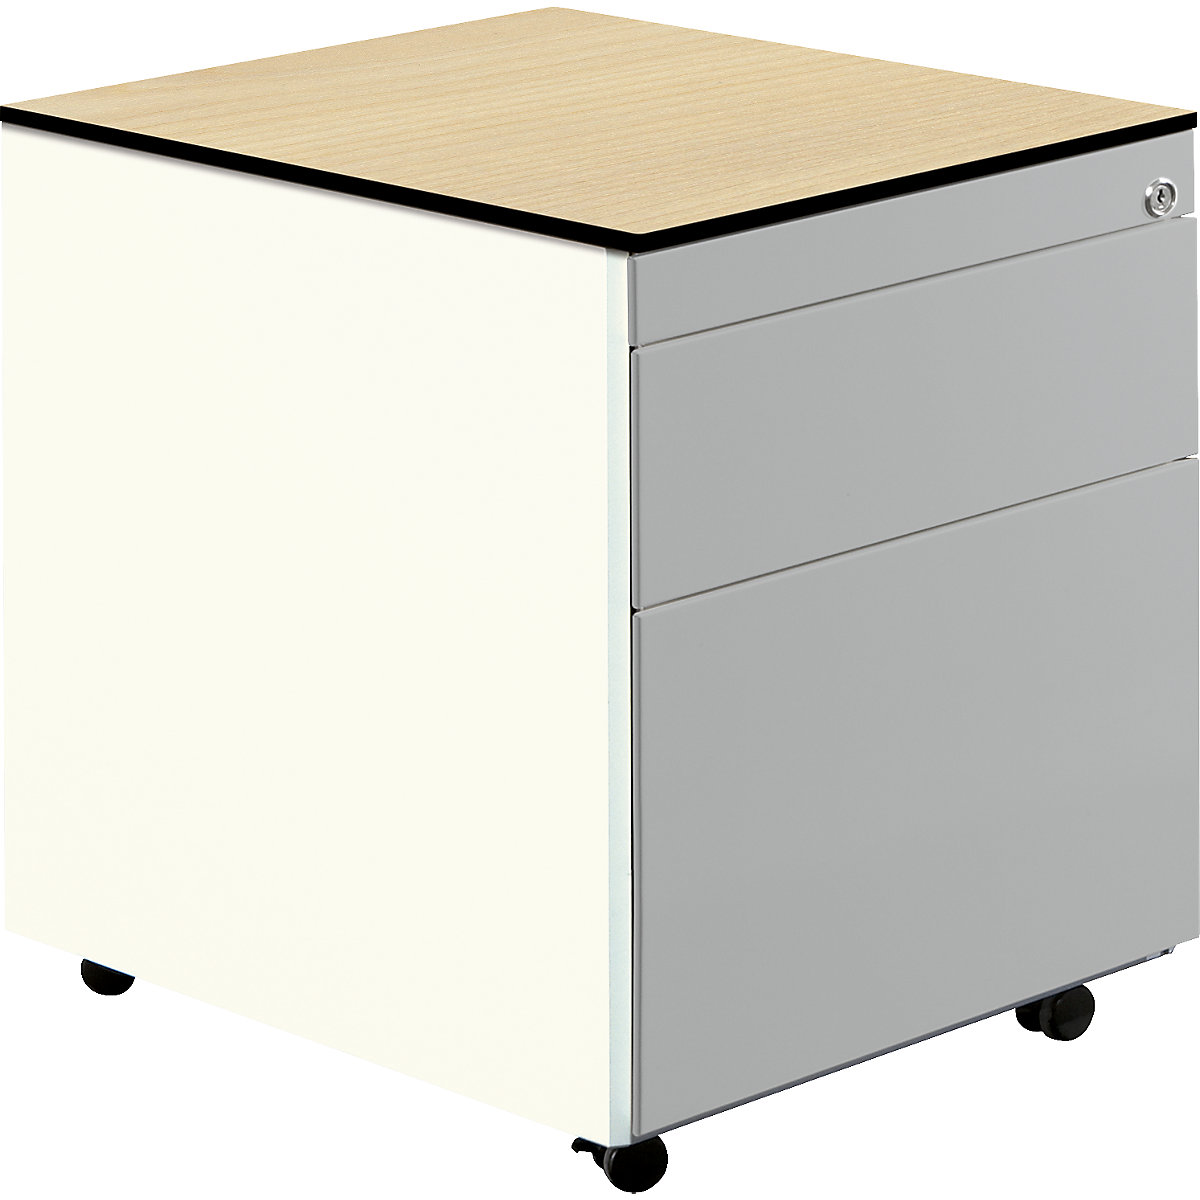 Casetieră cu sertare cu role – mauser, î. x ad. 573 x 600 mm, 1 sertar pentru materiale, 1 registratură suspendată, alb pur / alb aluminiu / arțar